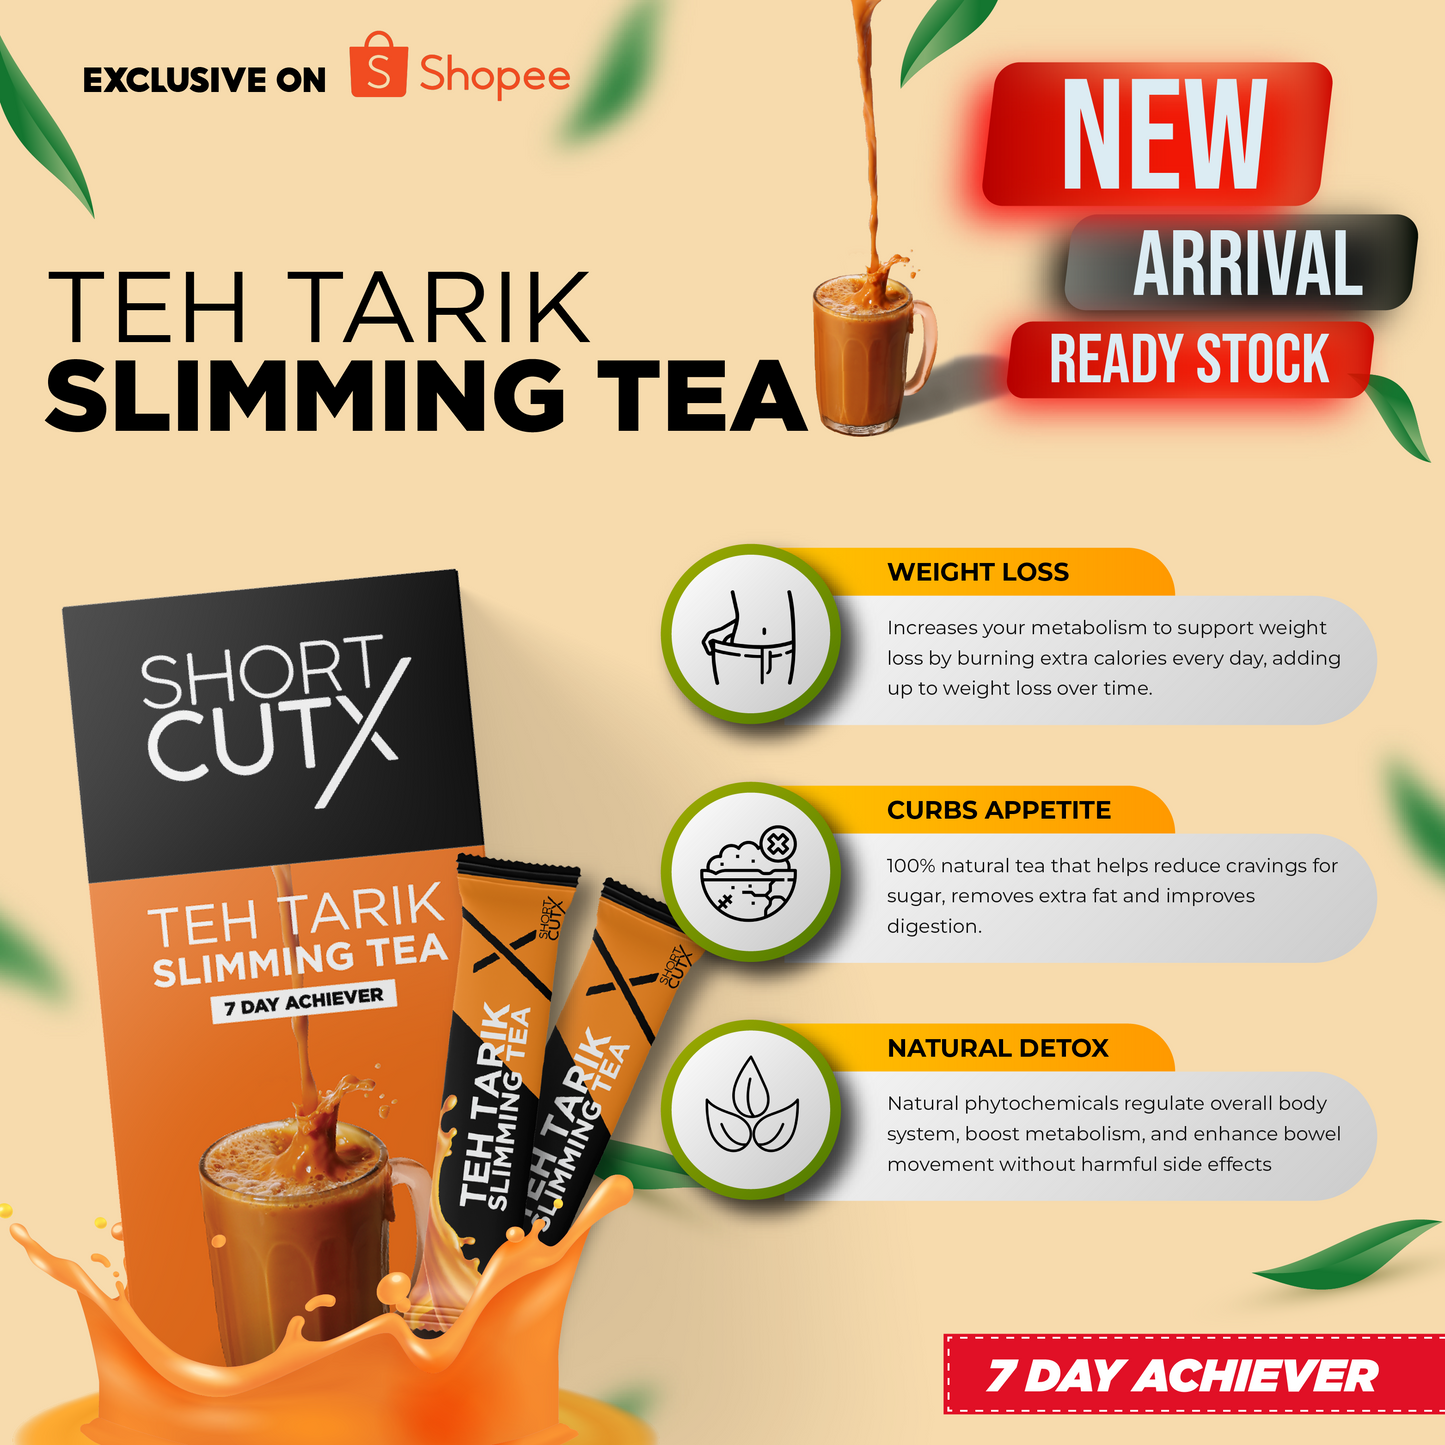 Shortcutx Teh Tarik Slimming Tea